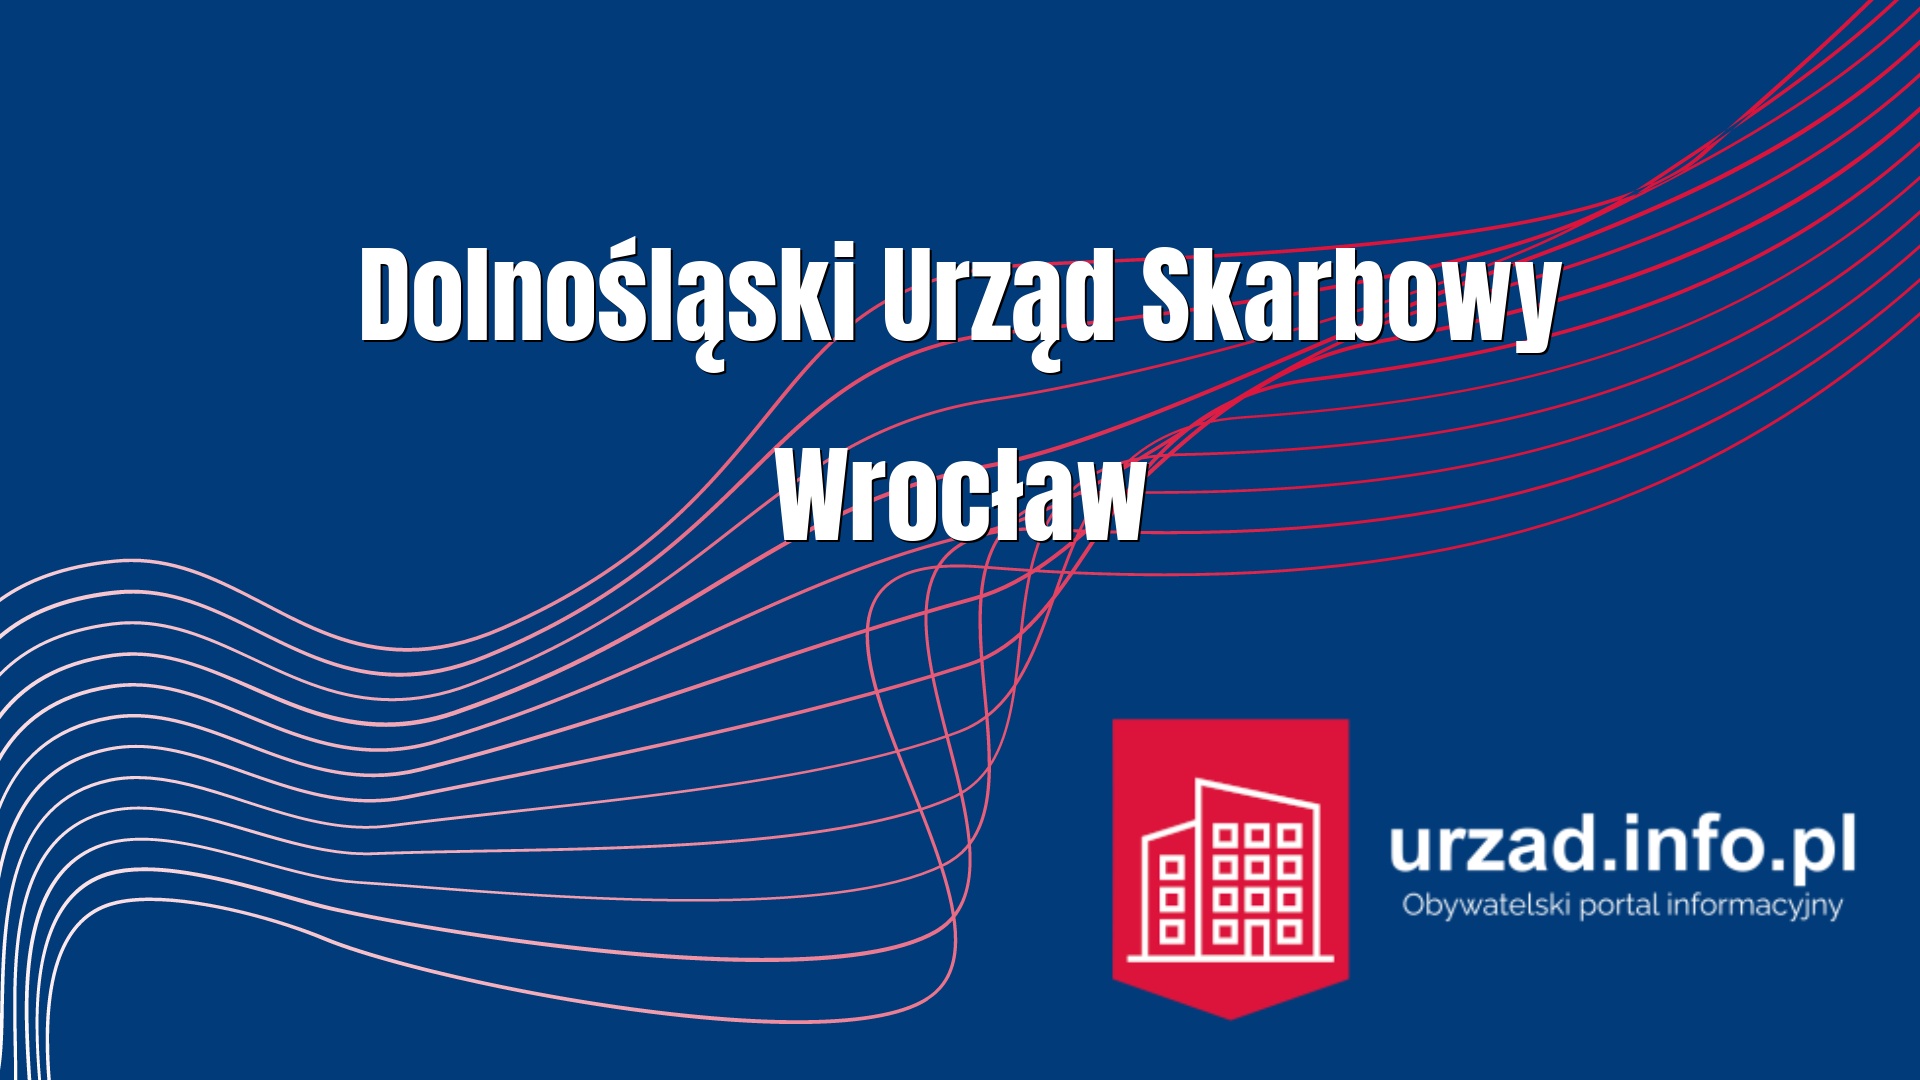 Dolnośląski Urząd Skarbowy we Wrocławiu